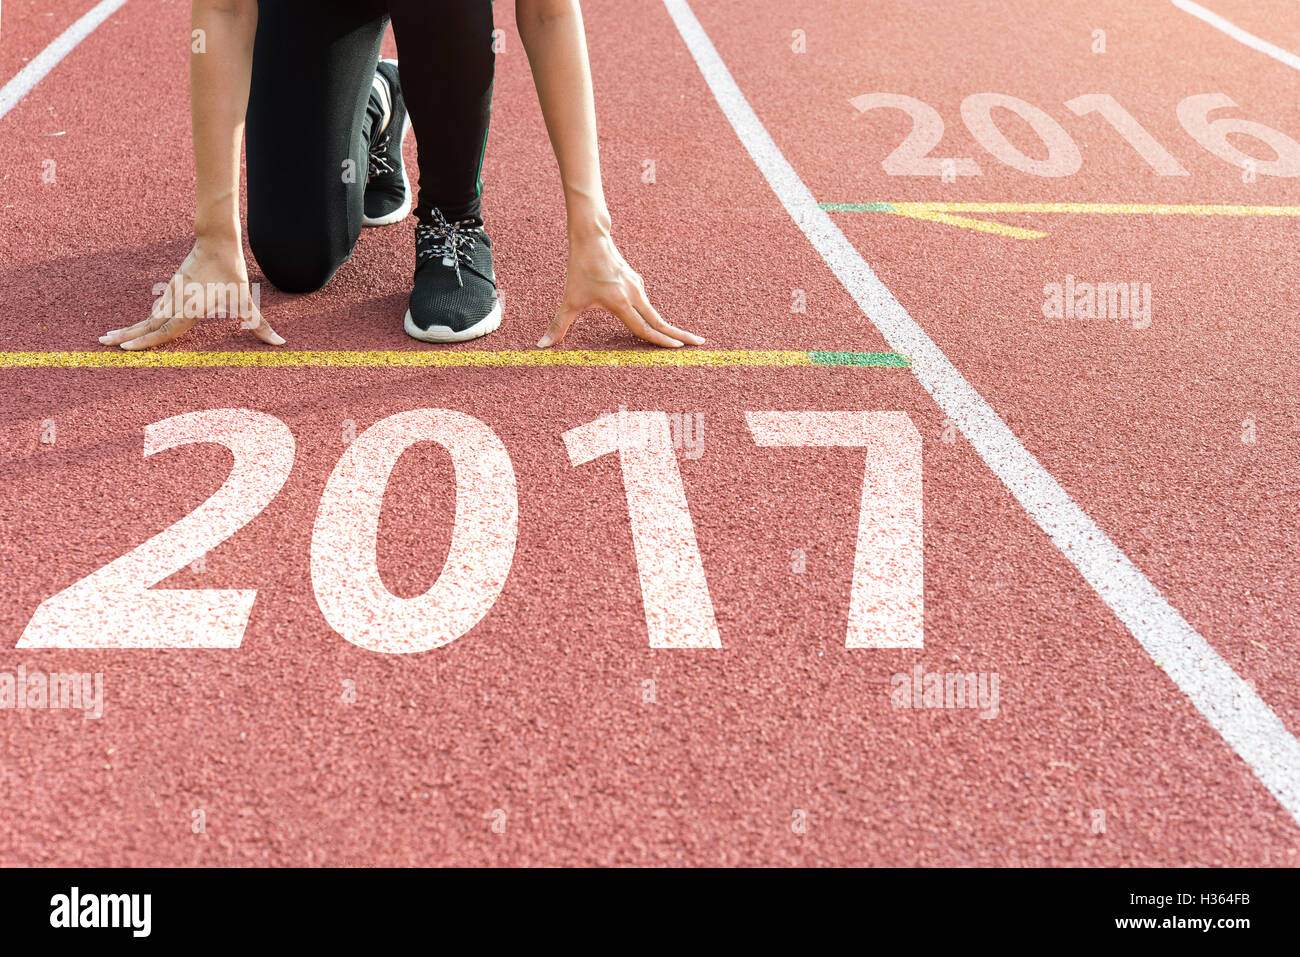 Athleten am Start wartet auf den Start in Laufschiene mit Text 2017 Jahr Start ins neue Jahr 2017 Stockfoto